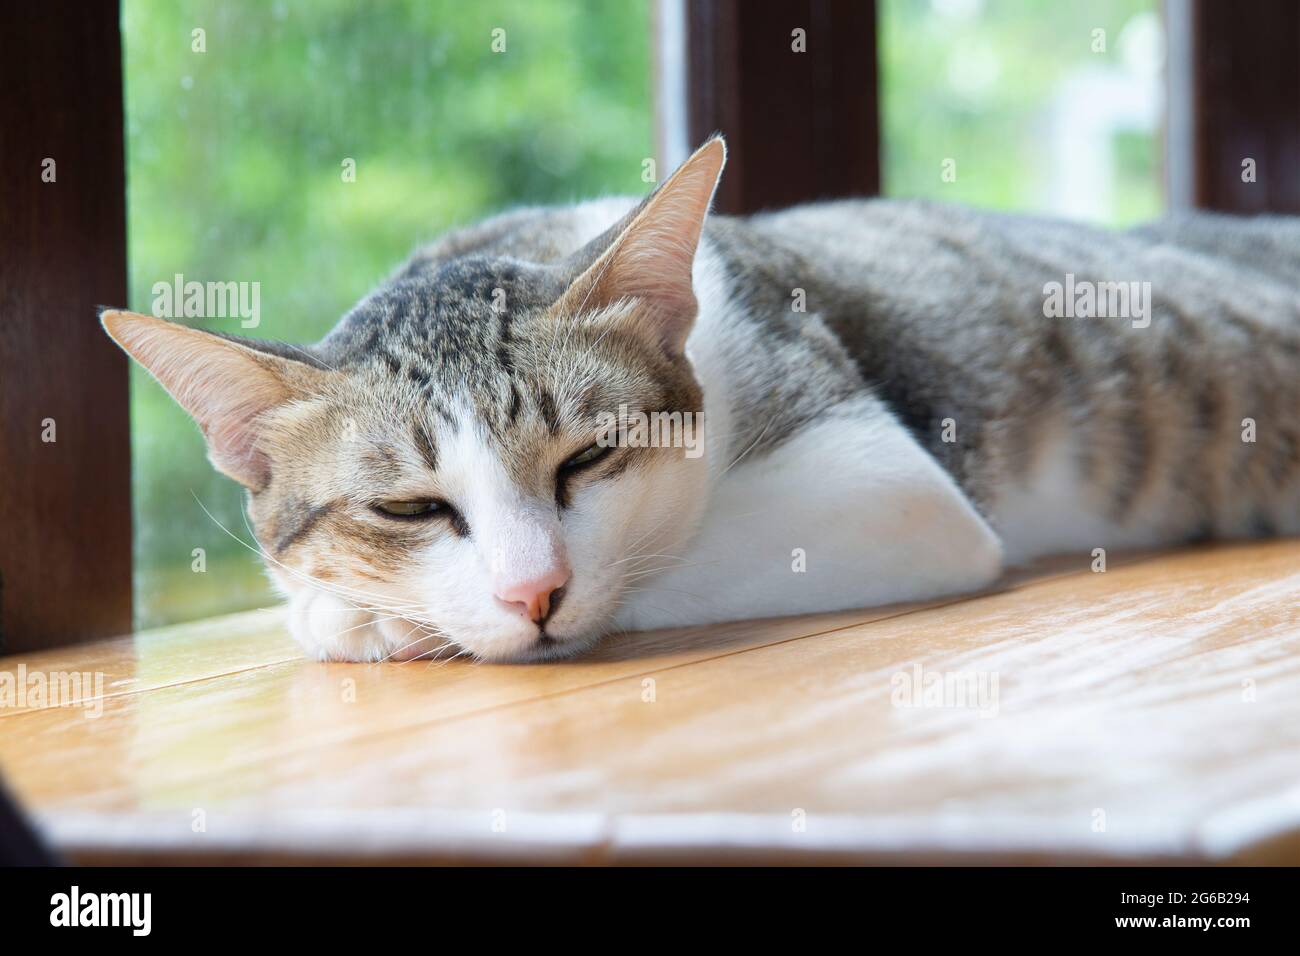 Un chat endormi s'est posé sur un comptoir en bois à côté des fenêtres dans la chambre. Banque D'Images